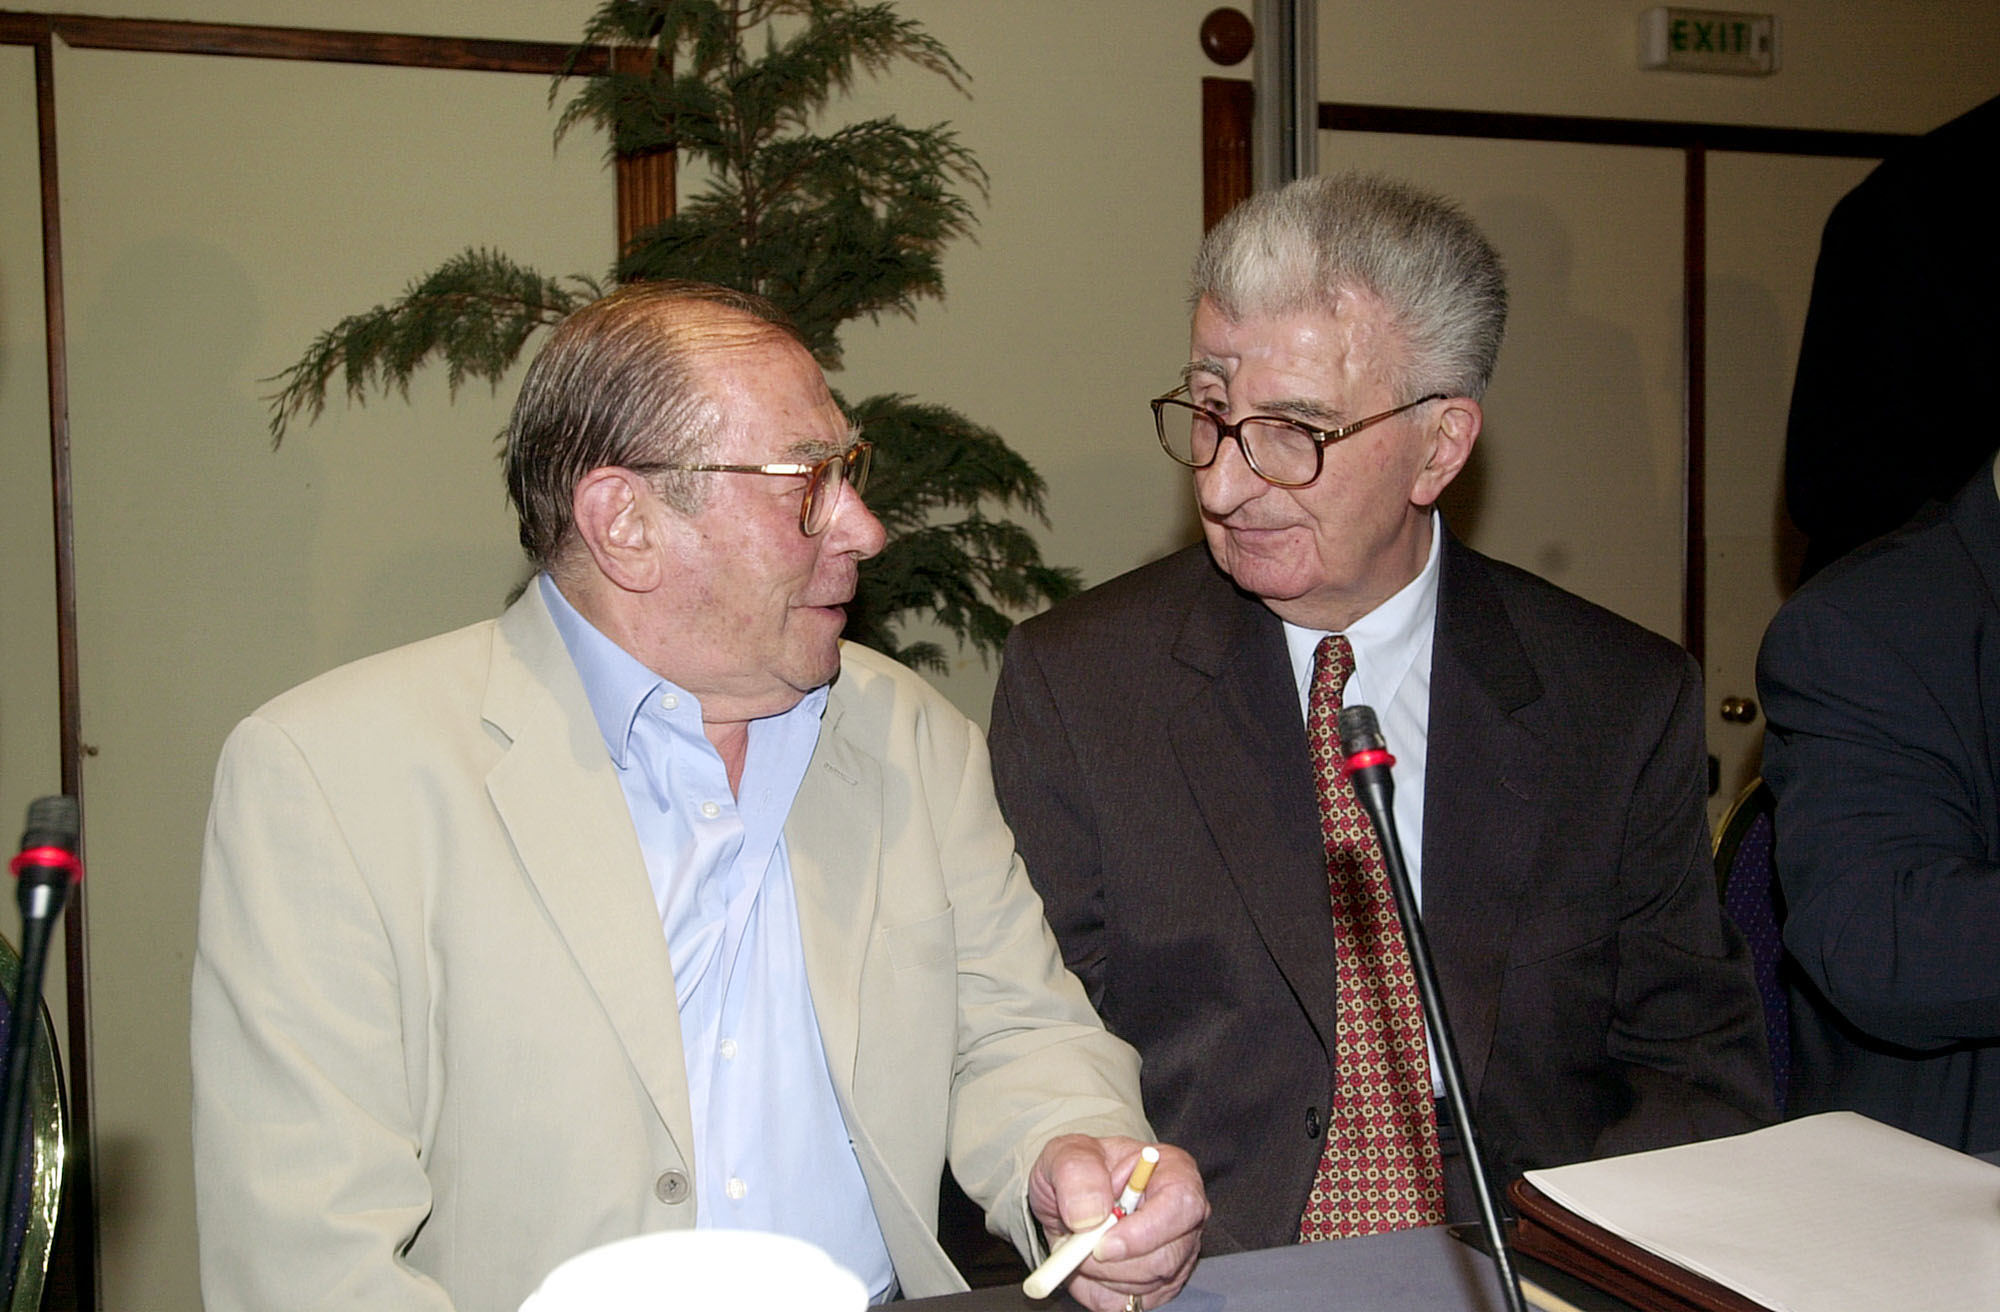 11/06/2001: Με τον πρώην υπουργό Εξωτερικών, Μιχάλη Παπακωνσταντίνου στην παρουσίαση του βιβλίου με τα απομνημονεύτατα του Κίρο Γκλιγκόροφ